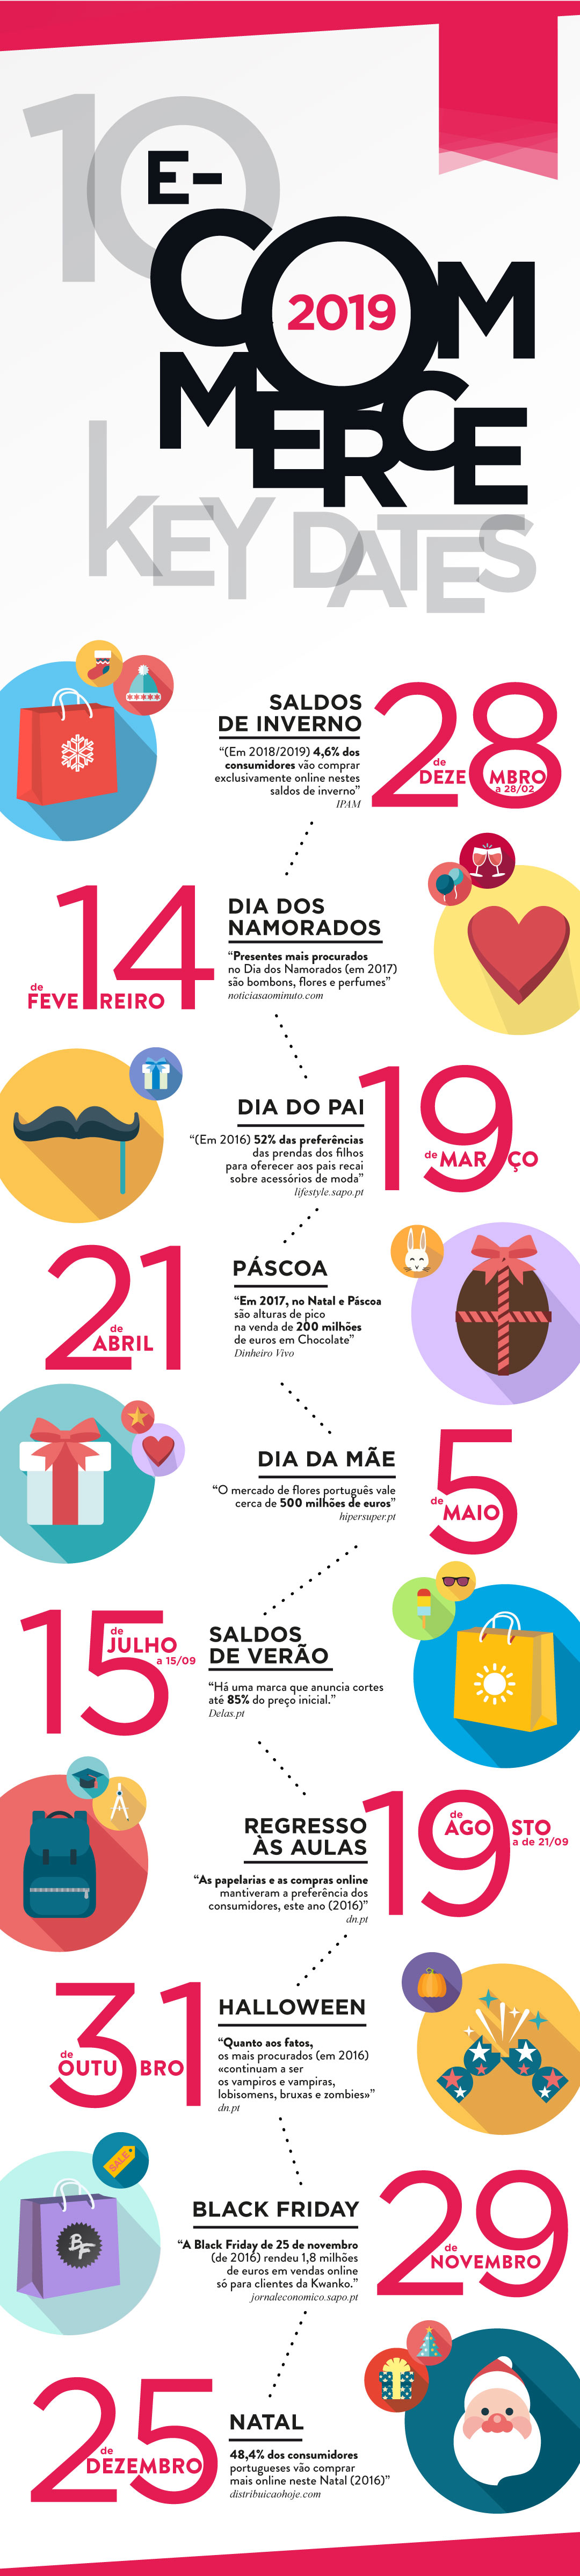 Top 10 Datas do E-commerce em Portugal